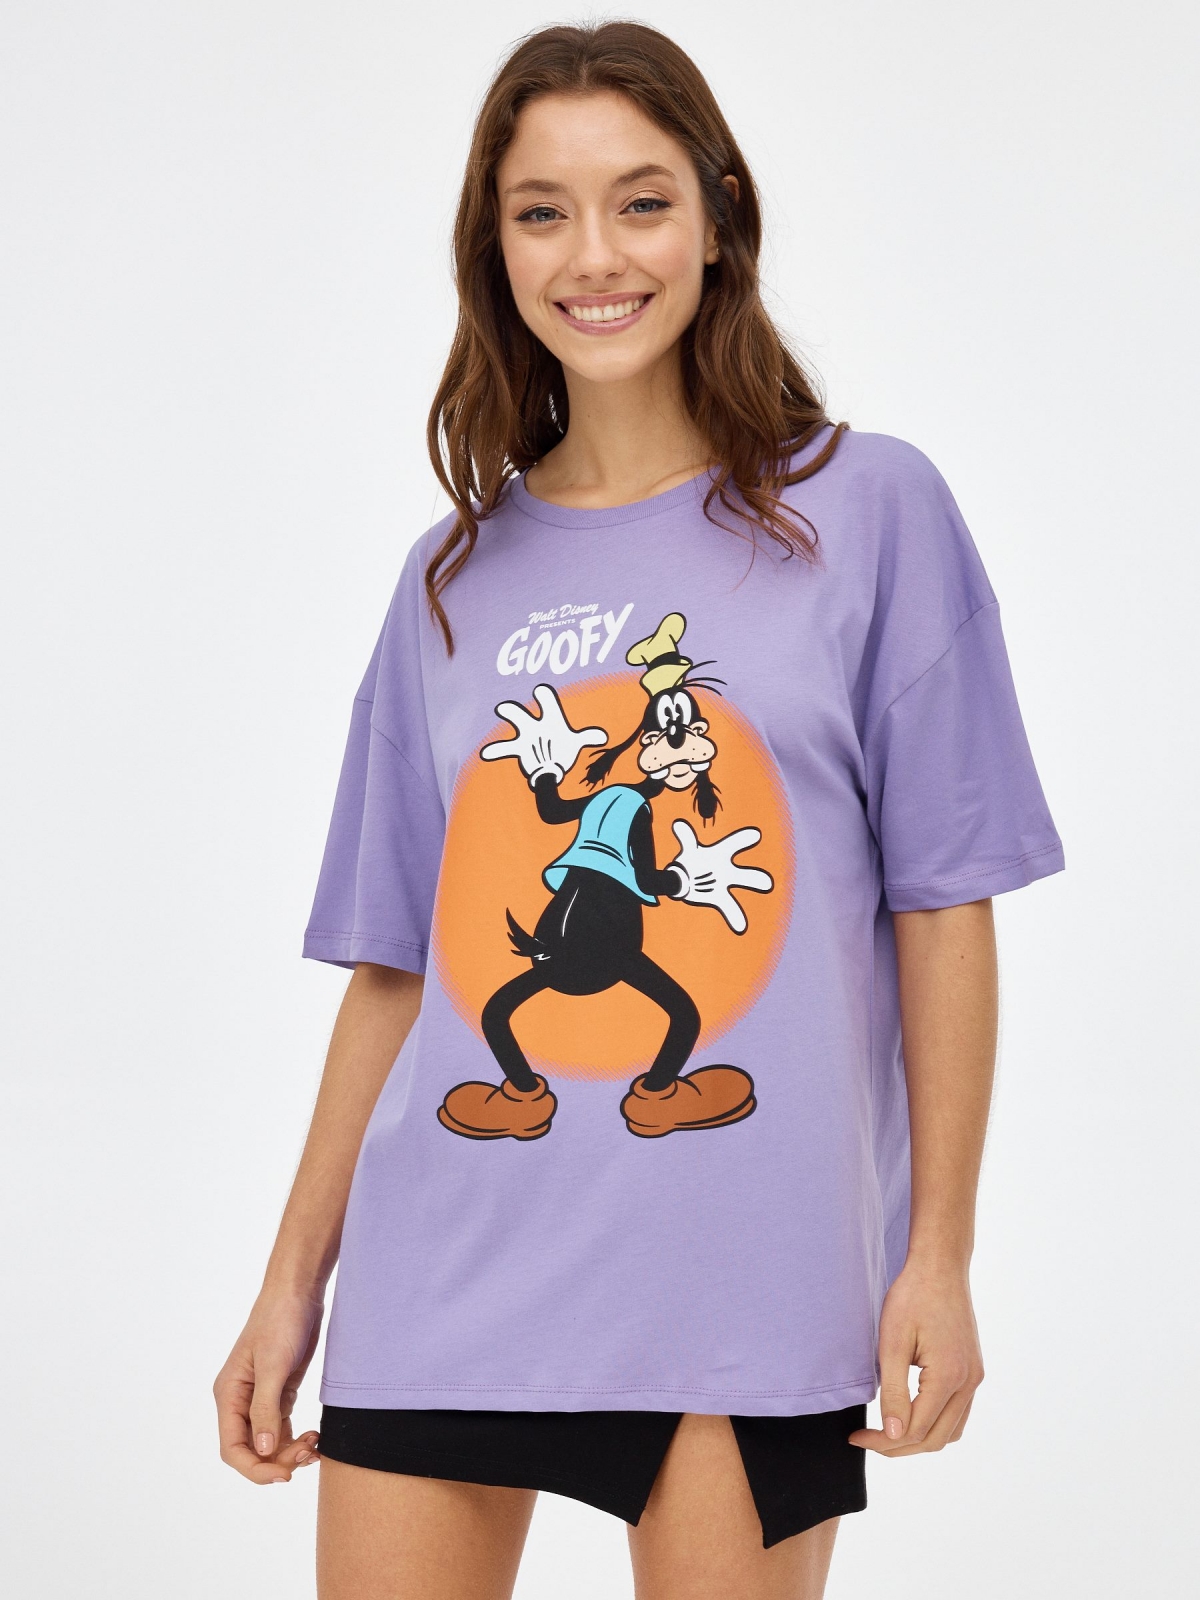 Camiseta Goofy lila vista media frontal